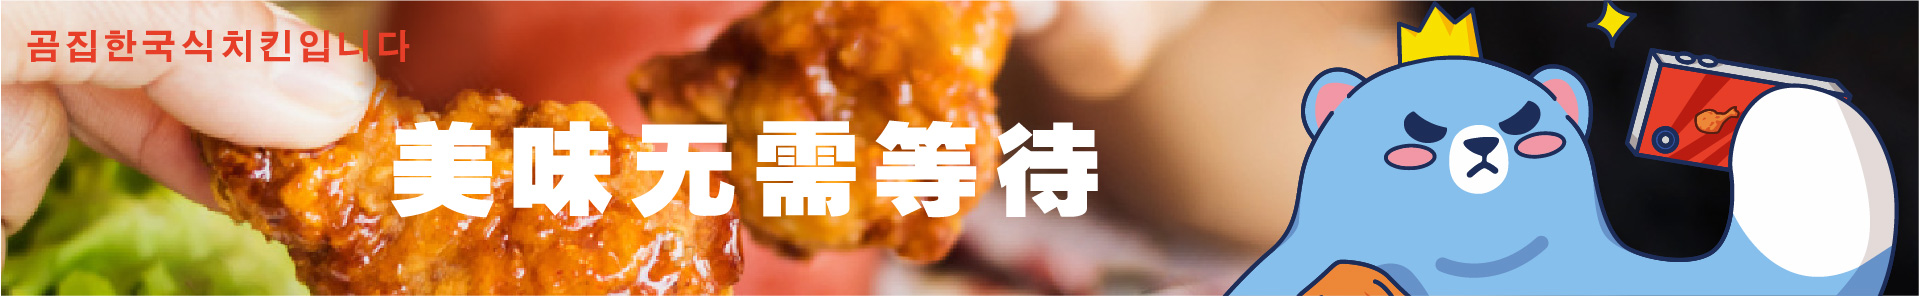 中式炸鸡加盟